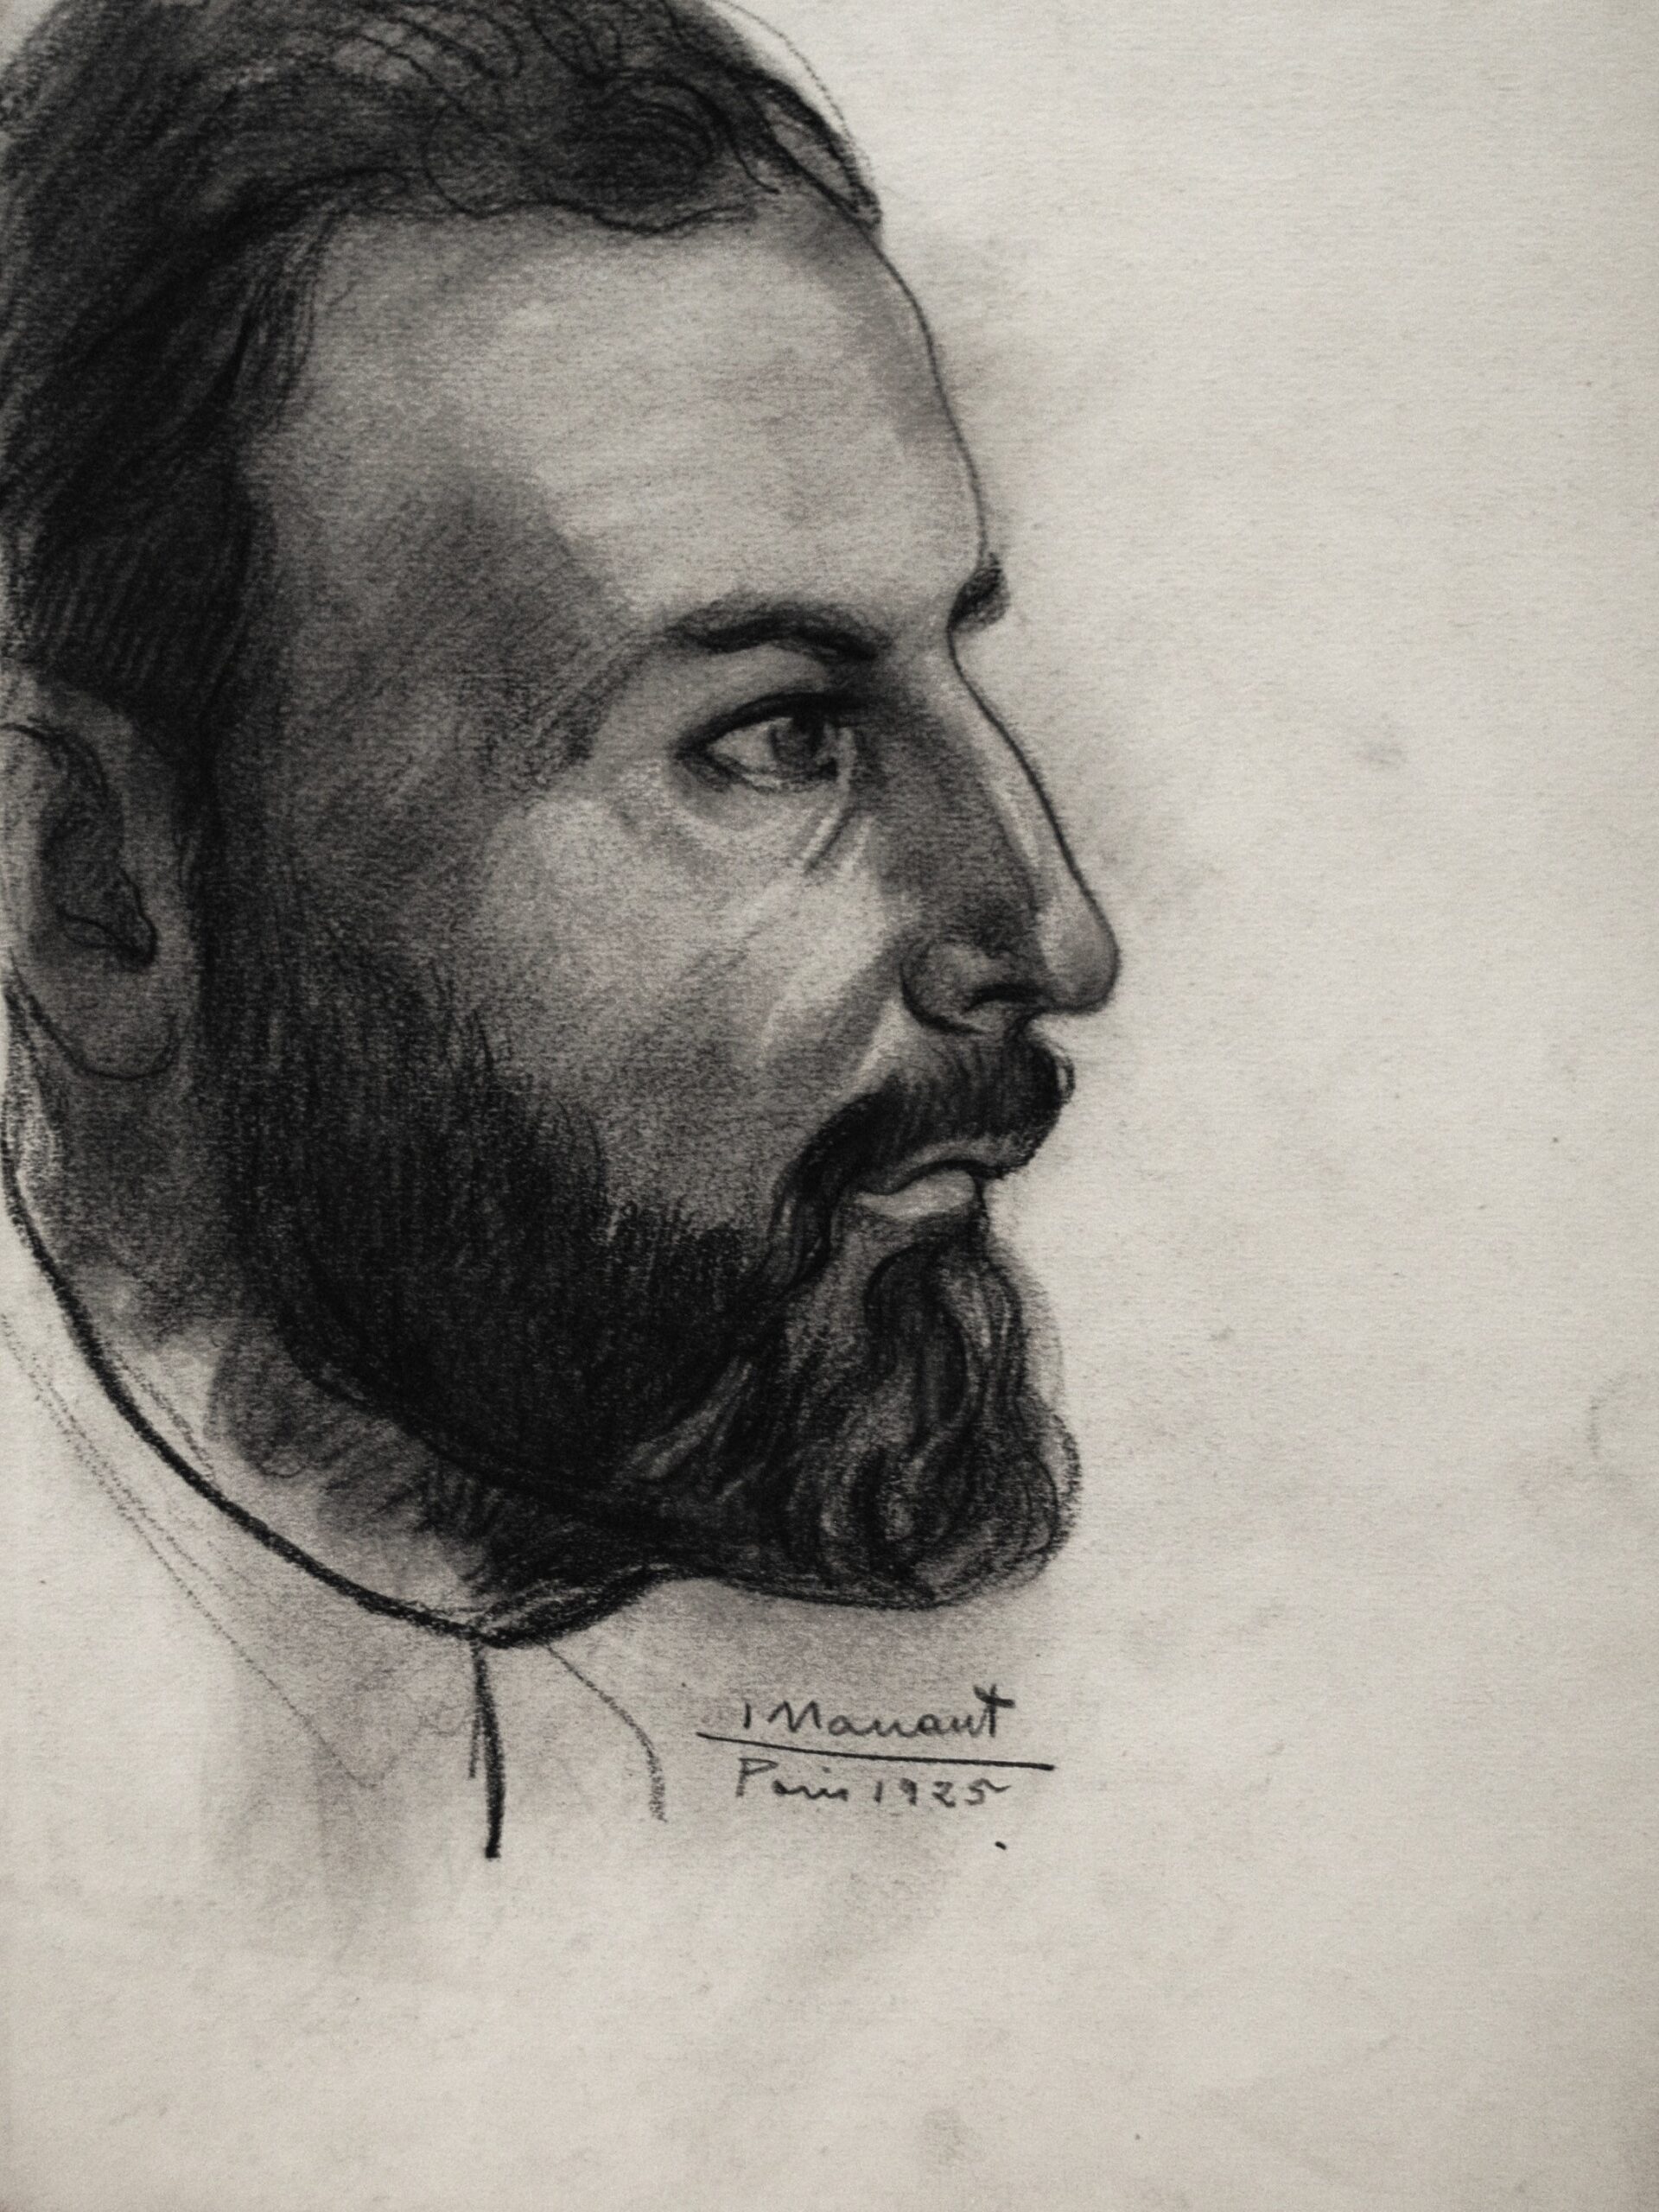 Dibujo de José Manaut sin título, 1925. Carboncillo sobre papel.